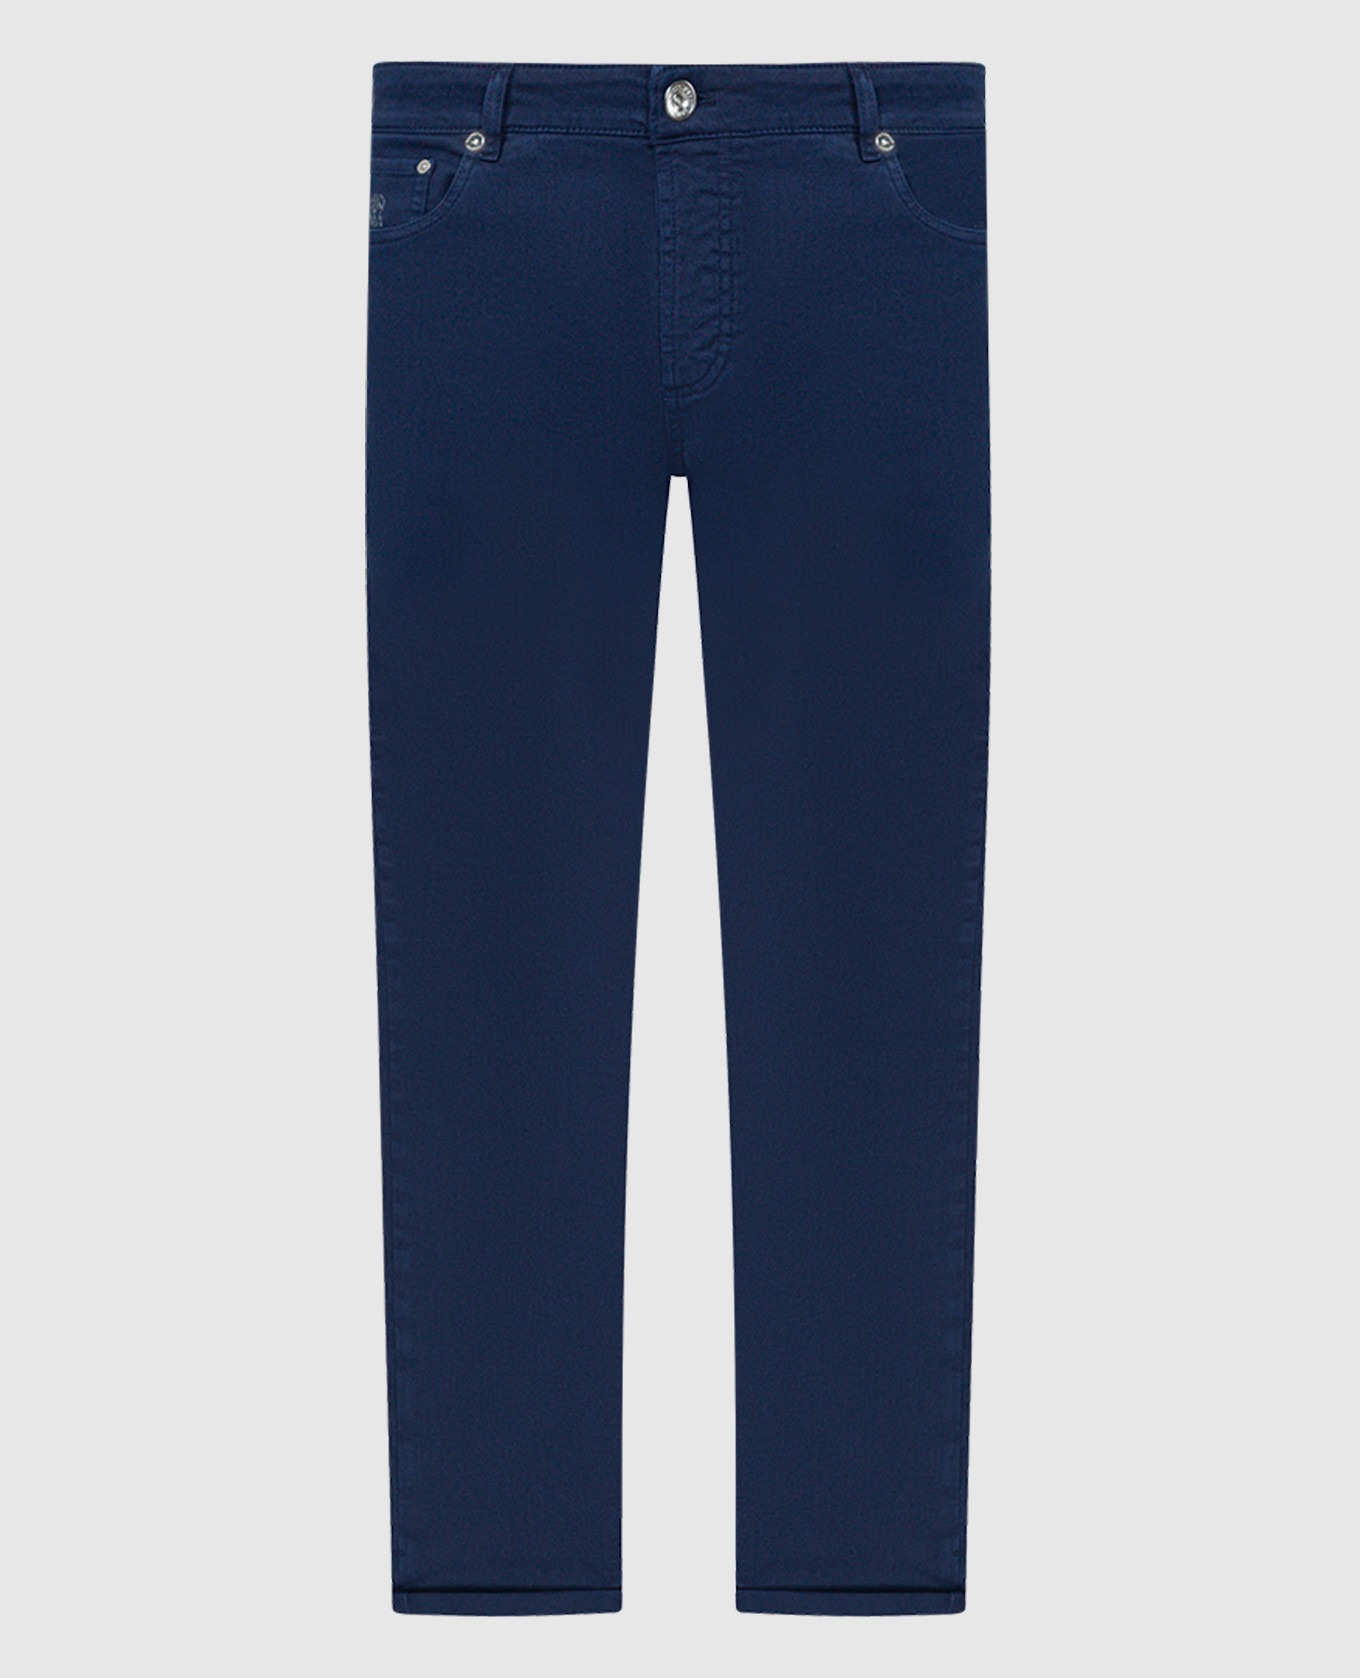 Синие зауженные брюки с логотипом патча.